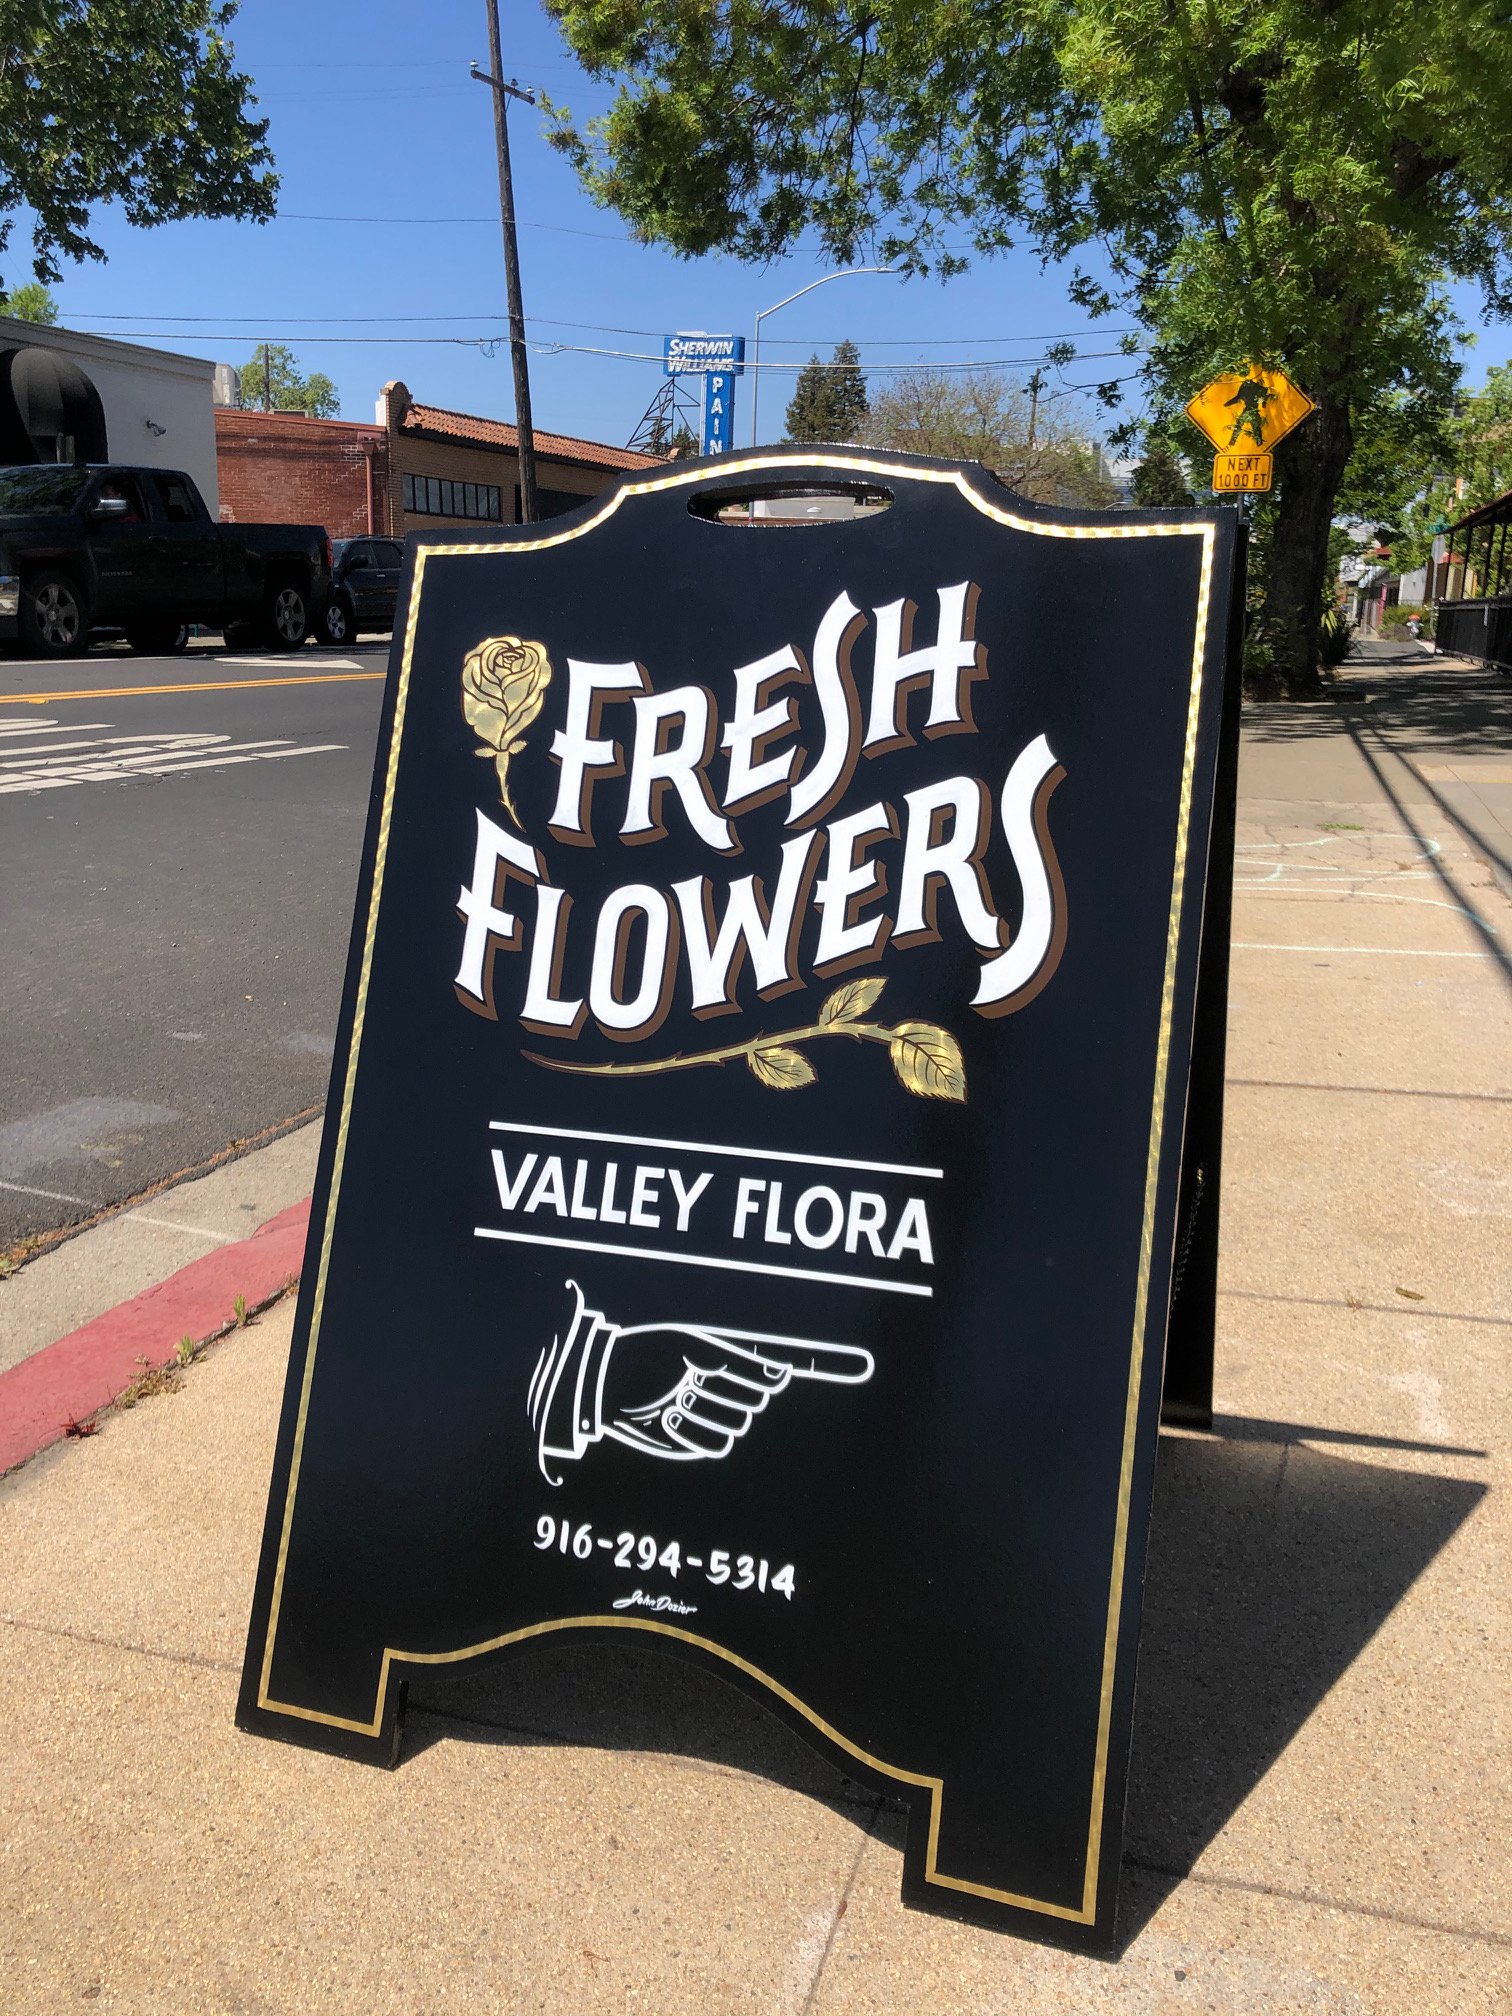 Valley Flora Sacramento 